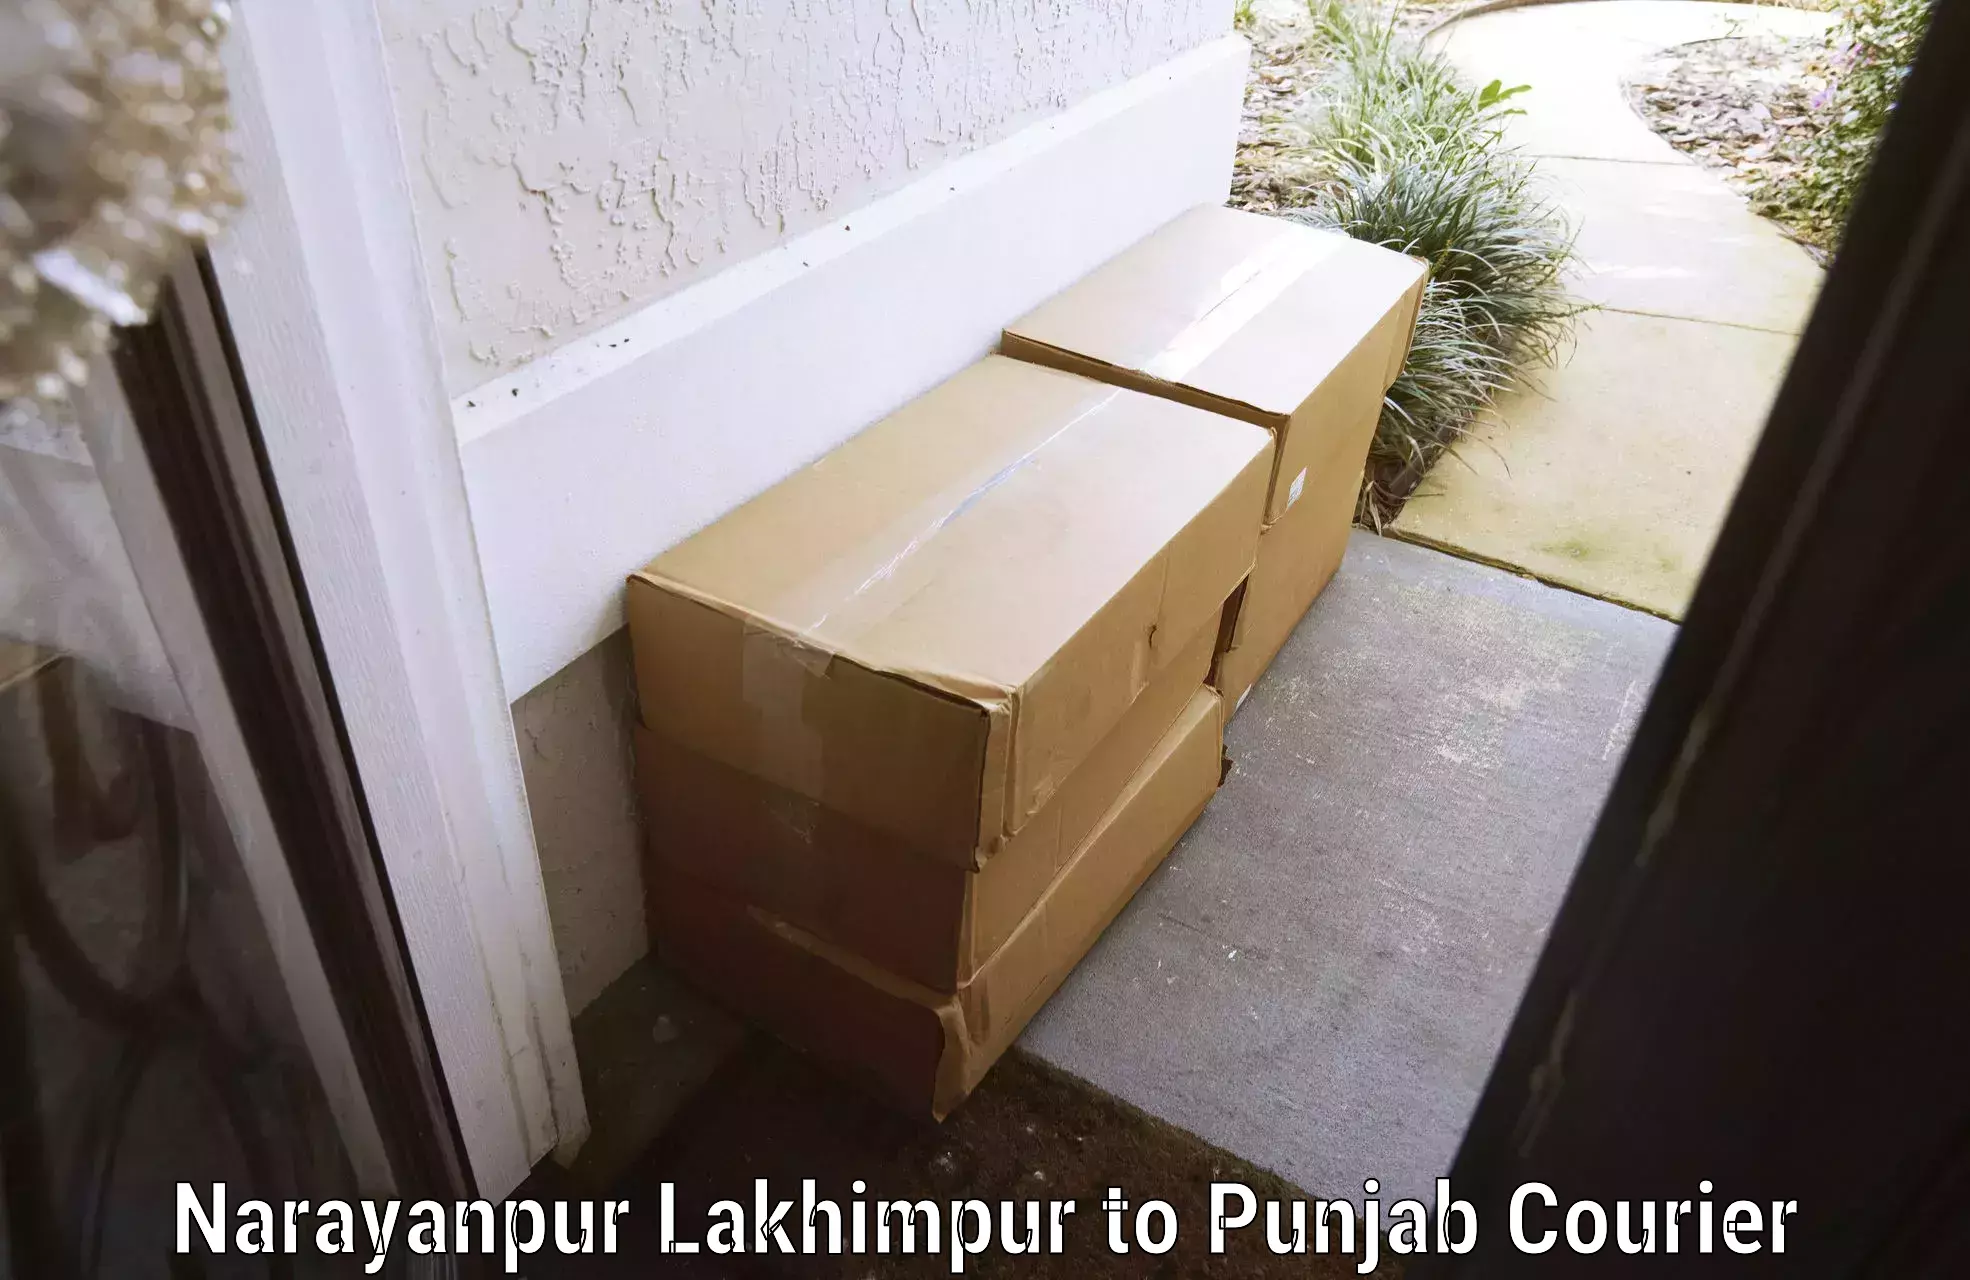 Luggage shipment tracking Narayanpur Lakhimpur to Mandi Gobindgarh